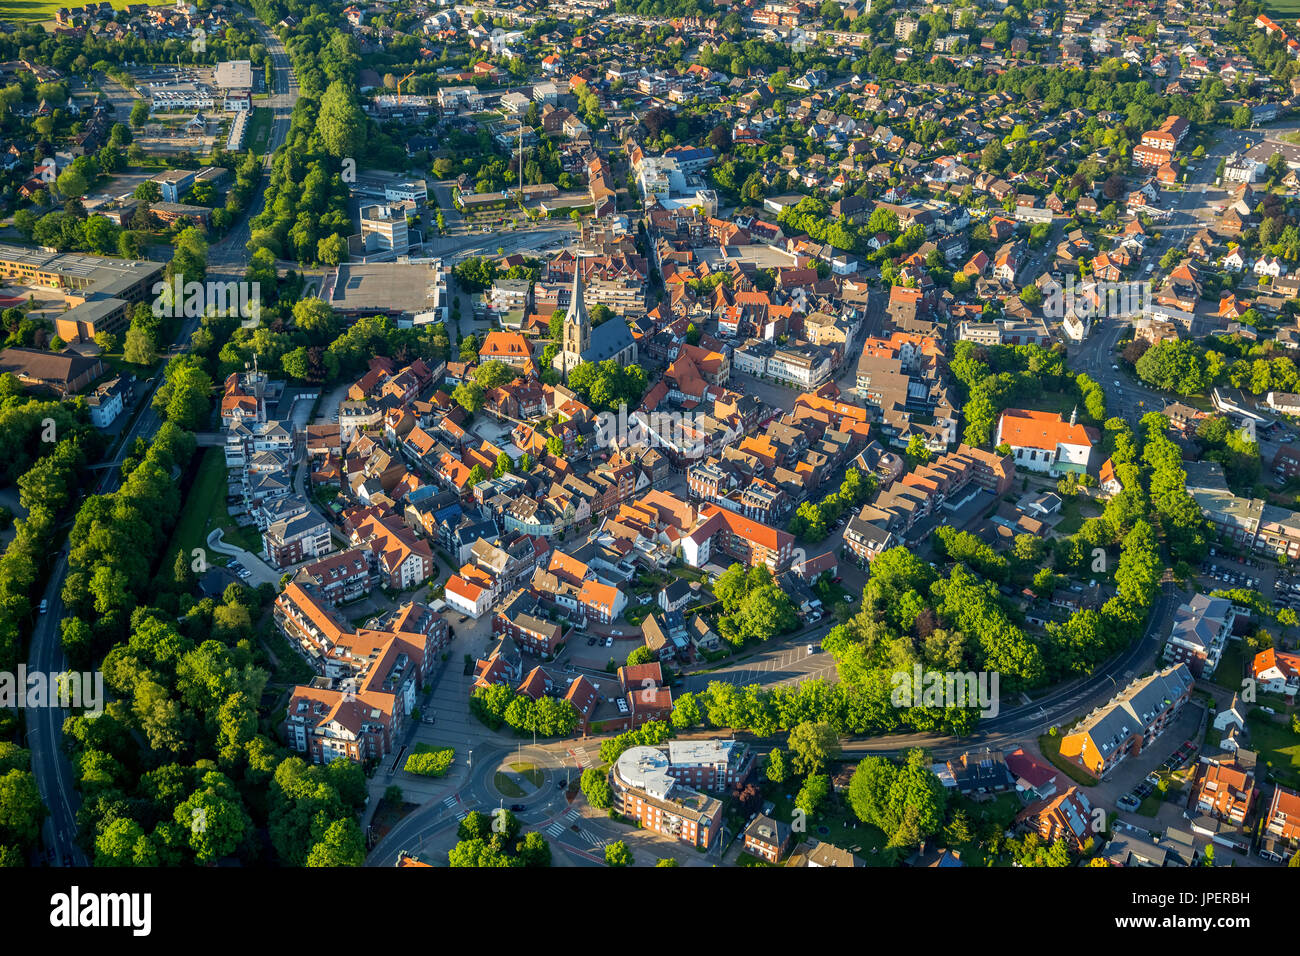 Stadtzentrum, Werne Werne, Ruhrgebiet, Nordrhein-Westfalen, Deutschland Foto de stock